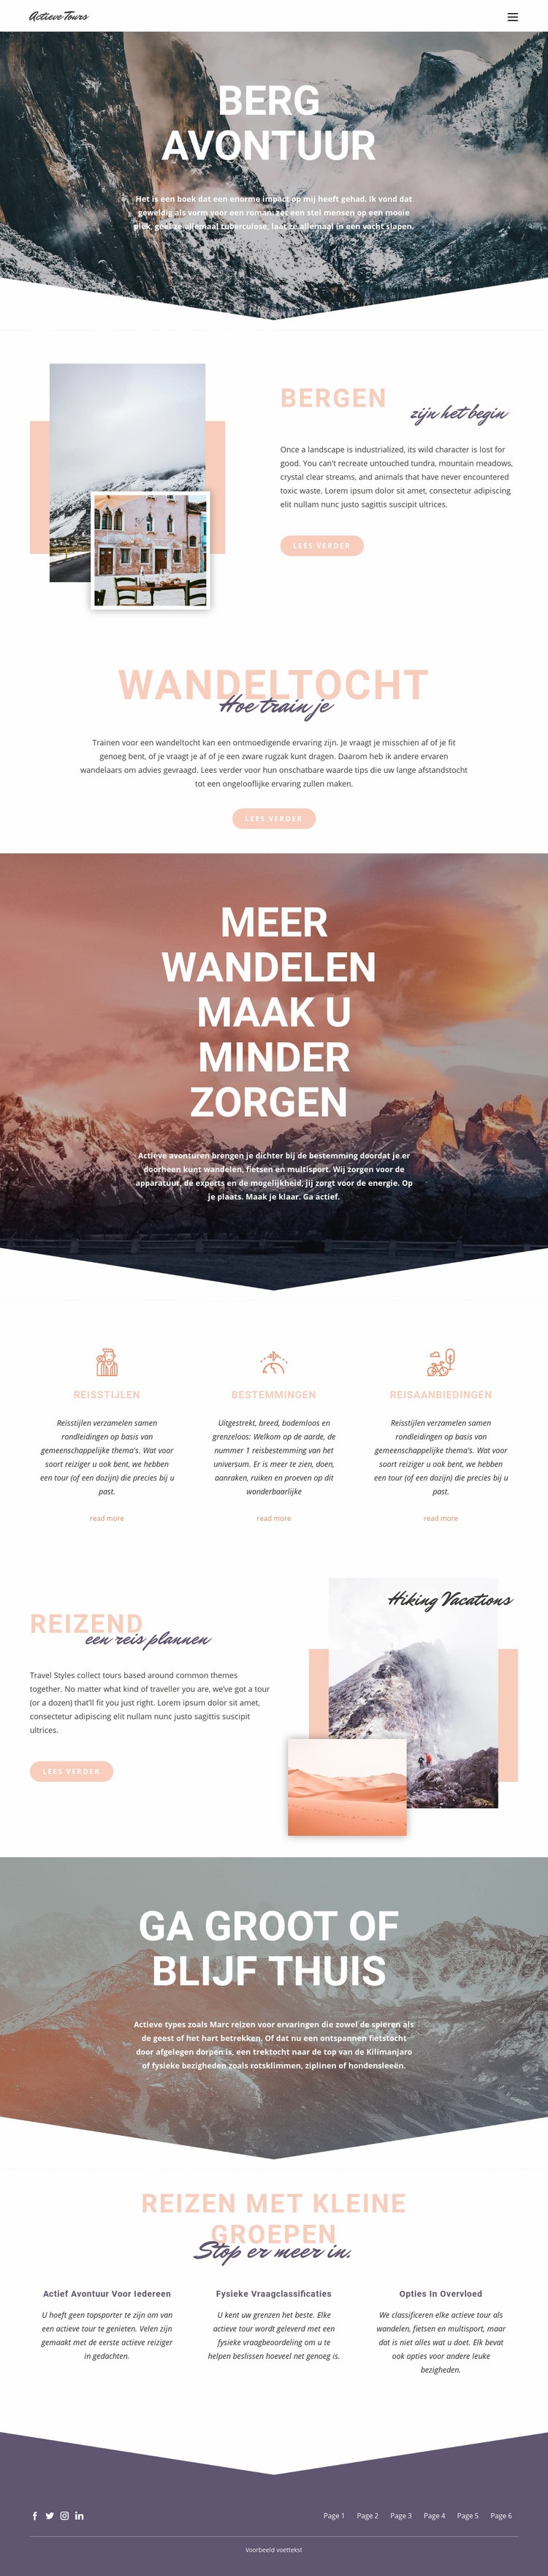 Berg avontuur Website ontwerp